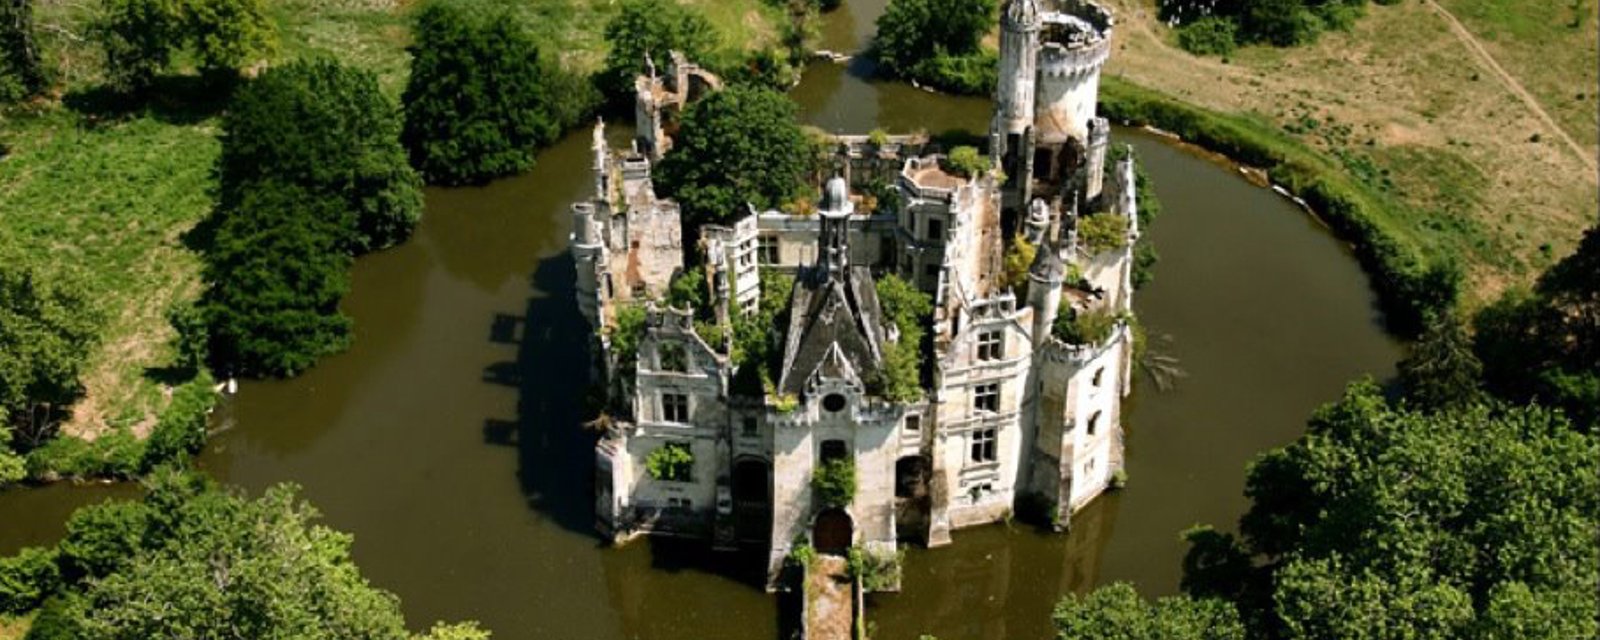 Ce château du Moyen Âge abandonné depuis 80 ans vaut le détour!